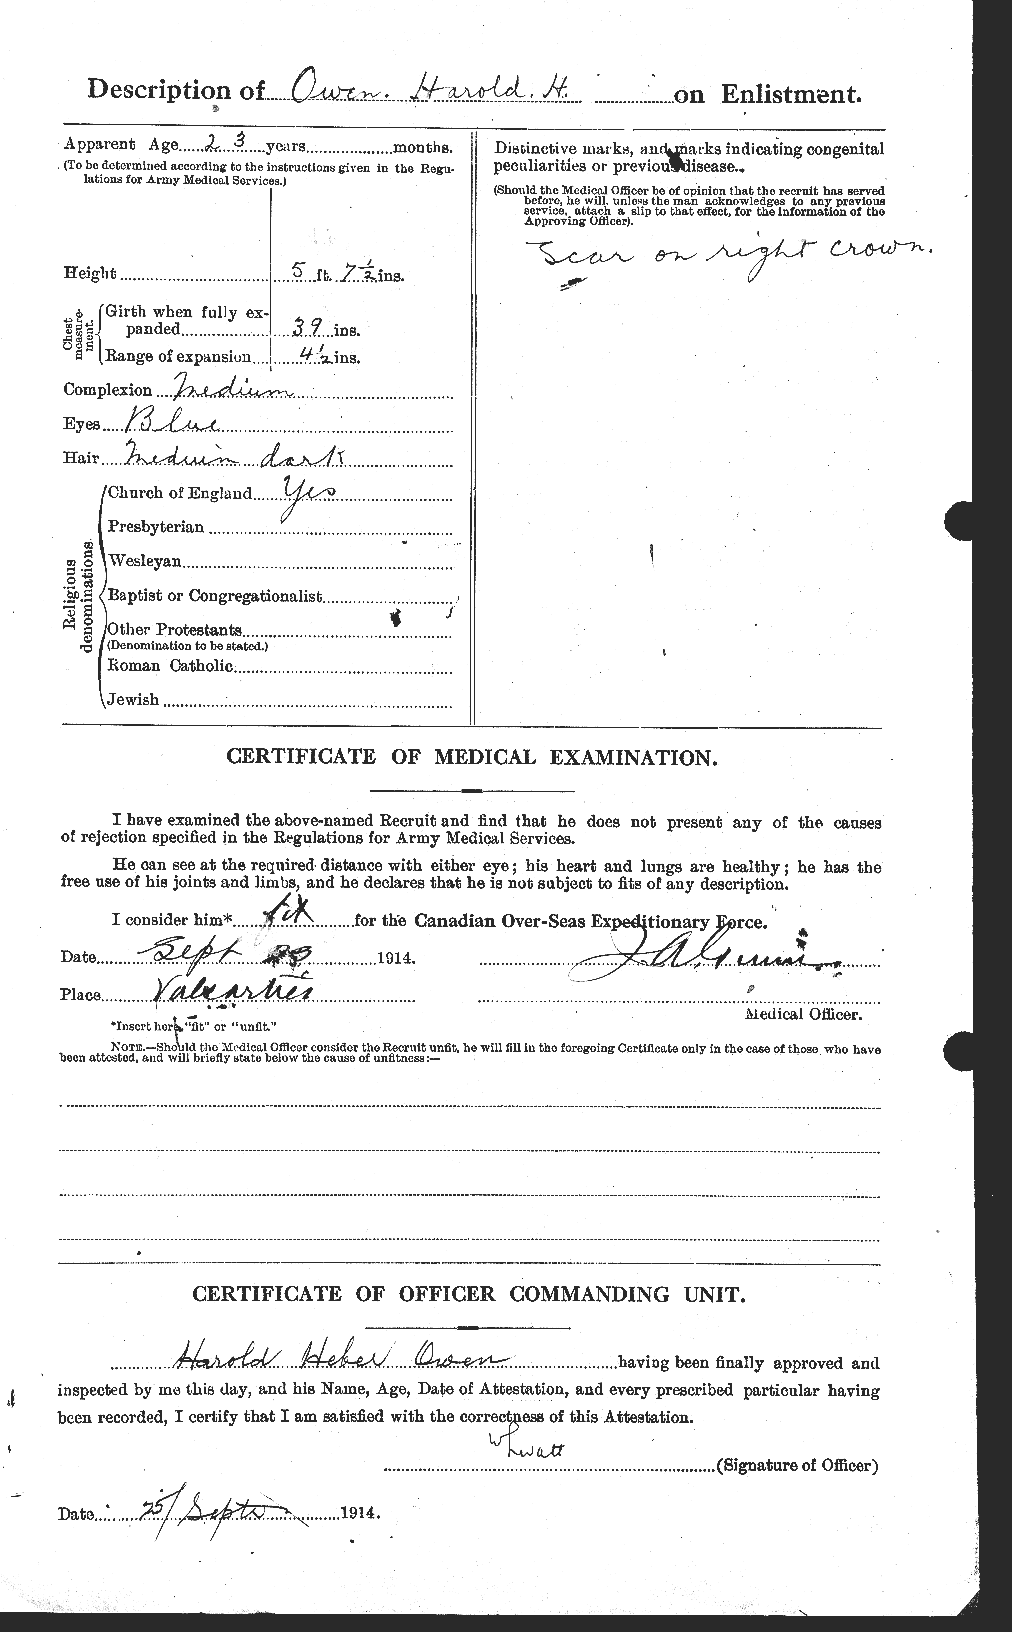 Dossiers du Personnel de la Première Guerre mondiale - CEC 561279b